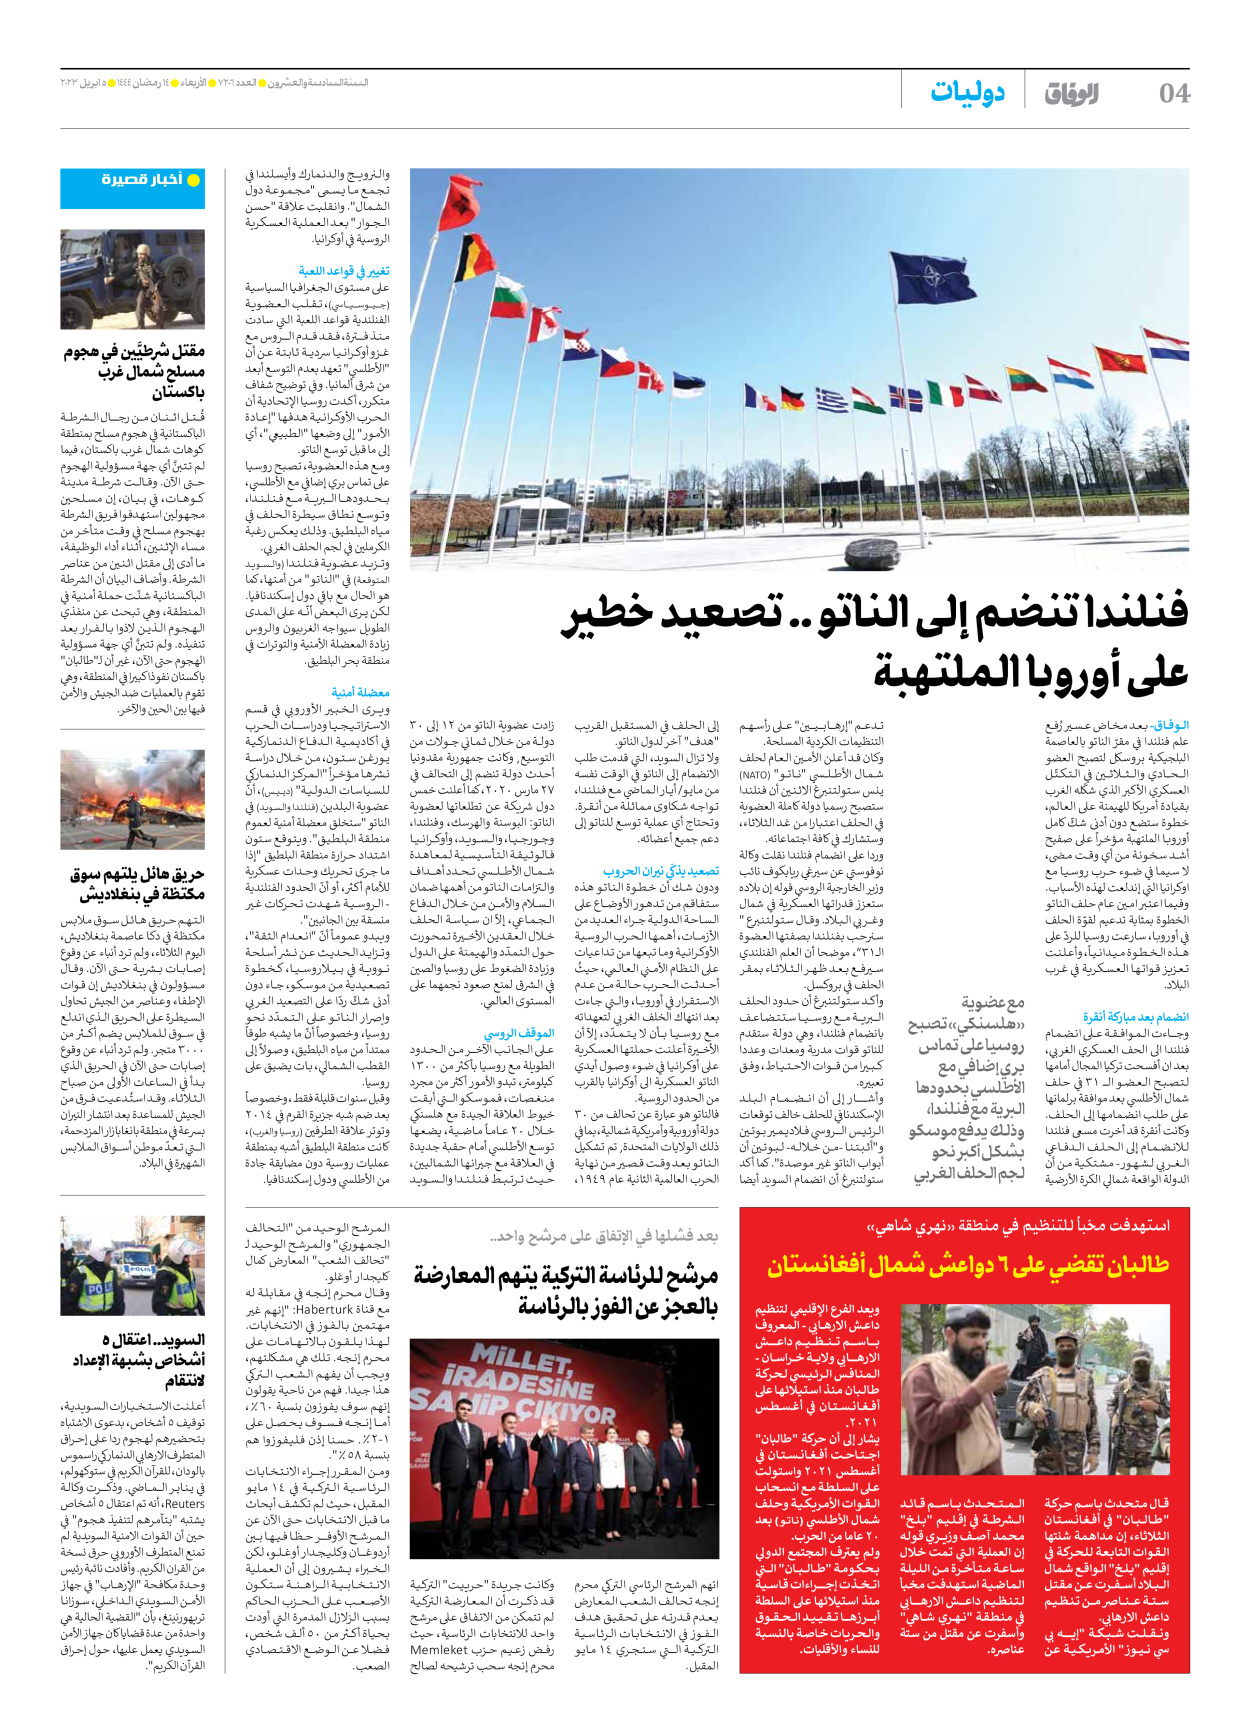 صحیفة ایران الدولیة الوفاق - العدد سبعة آلاف ومائتان وستة - ٠٥ أبريل ٢٠٢٣ - الصفحة ٤